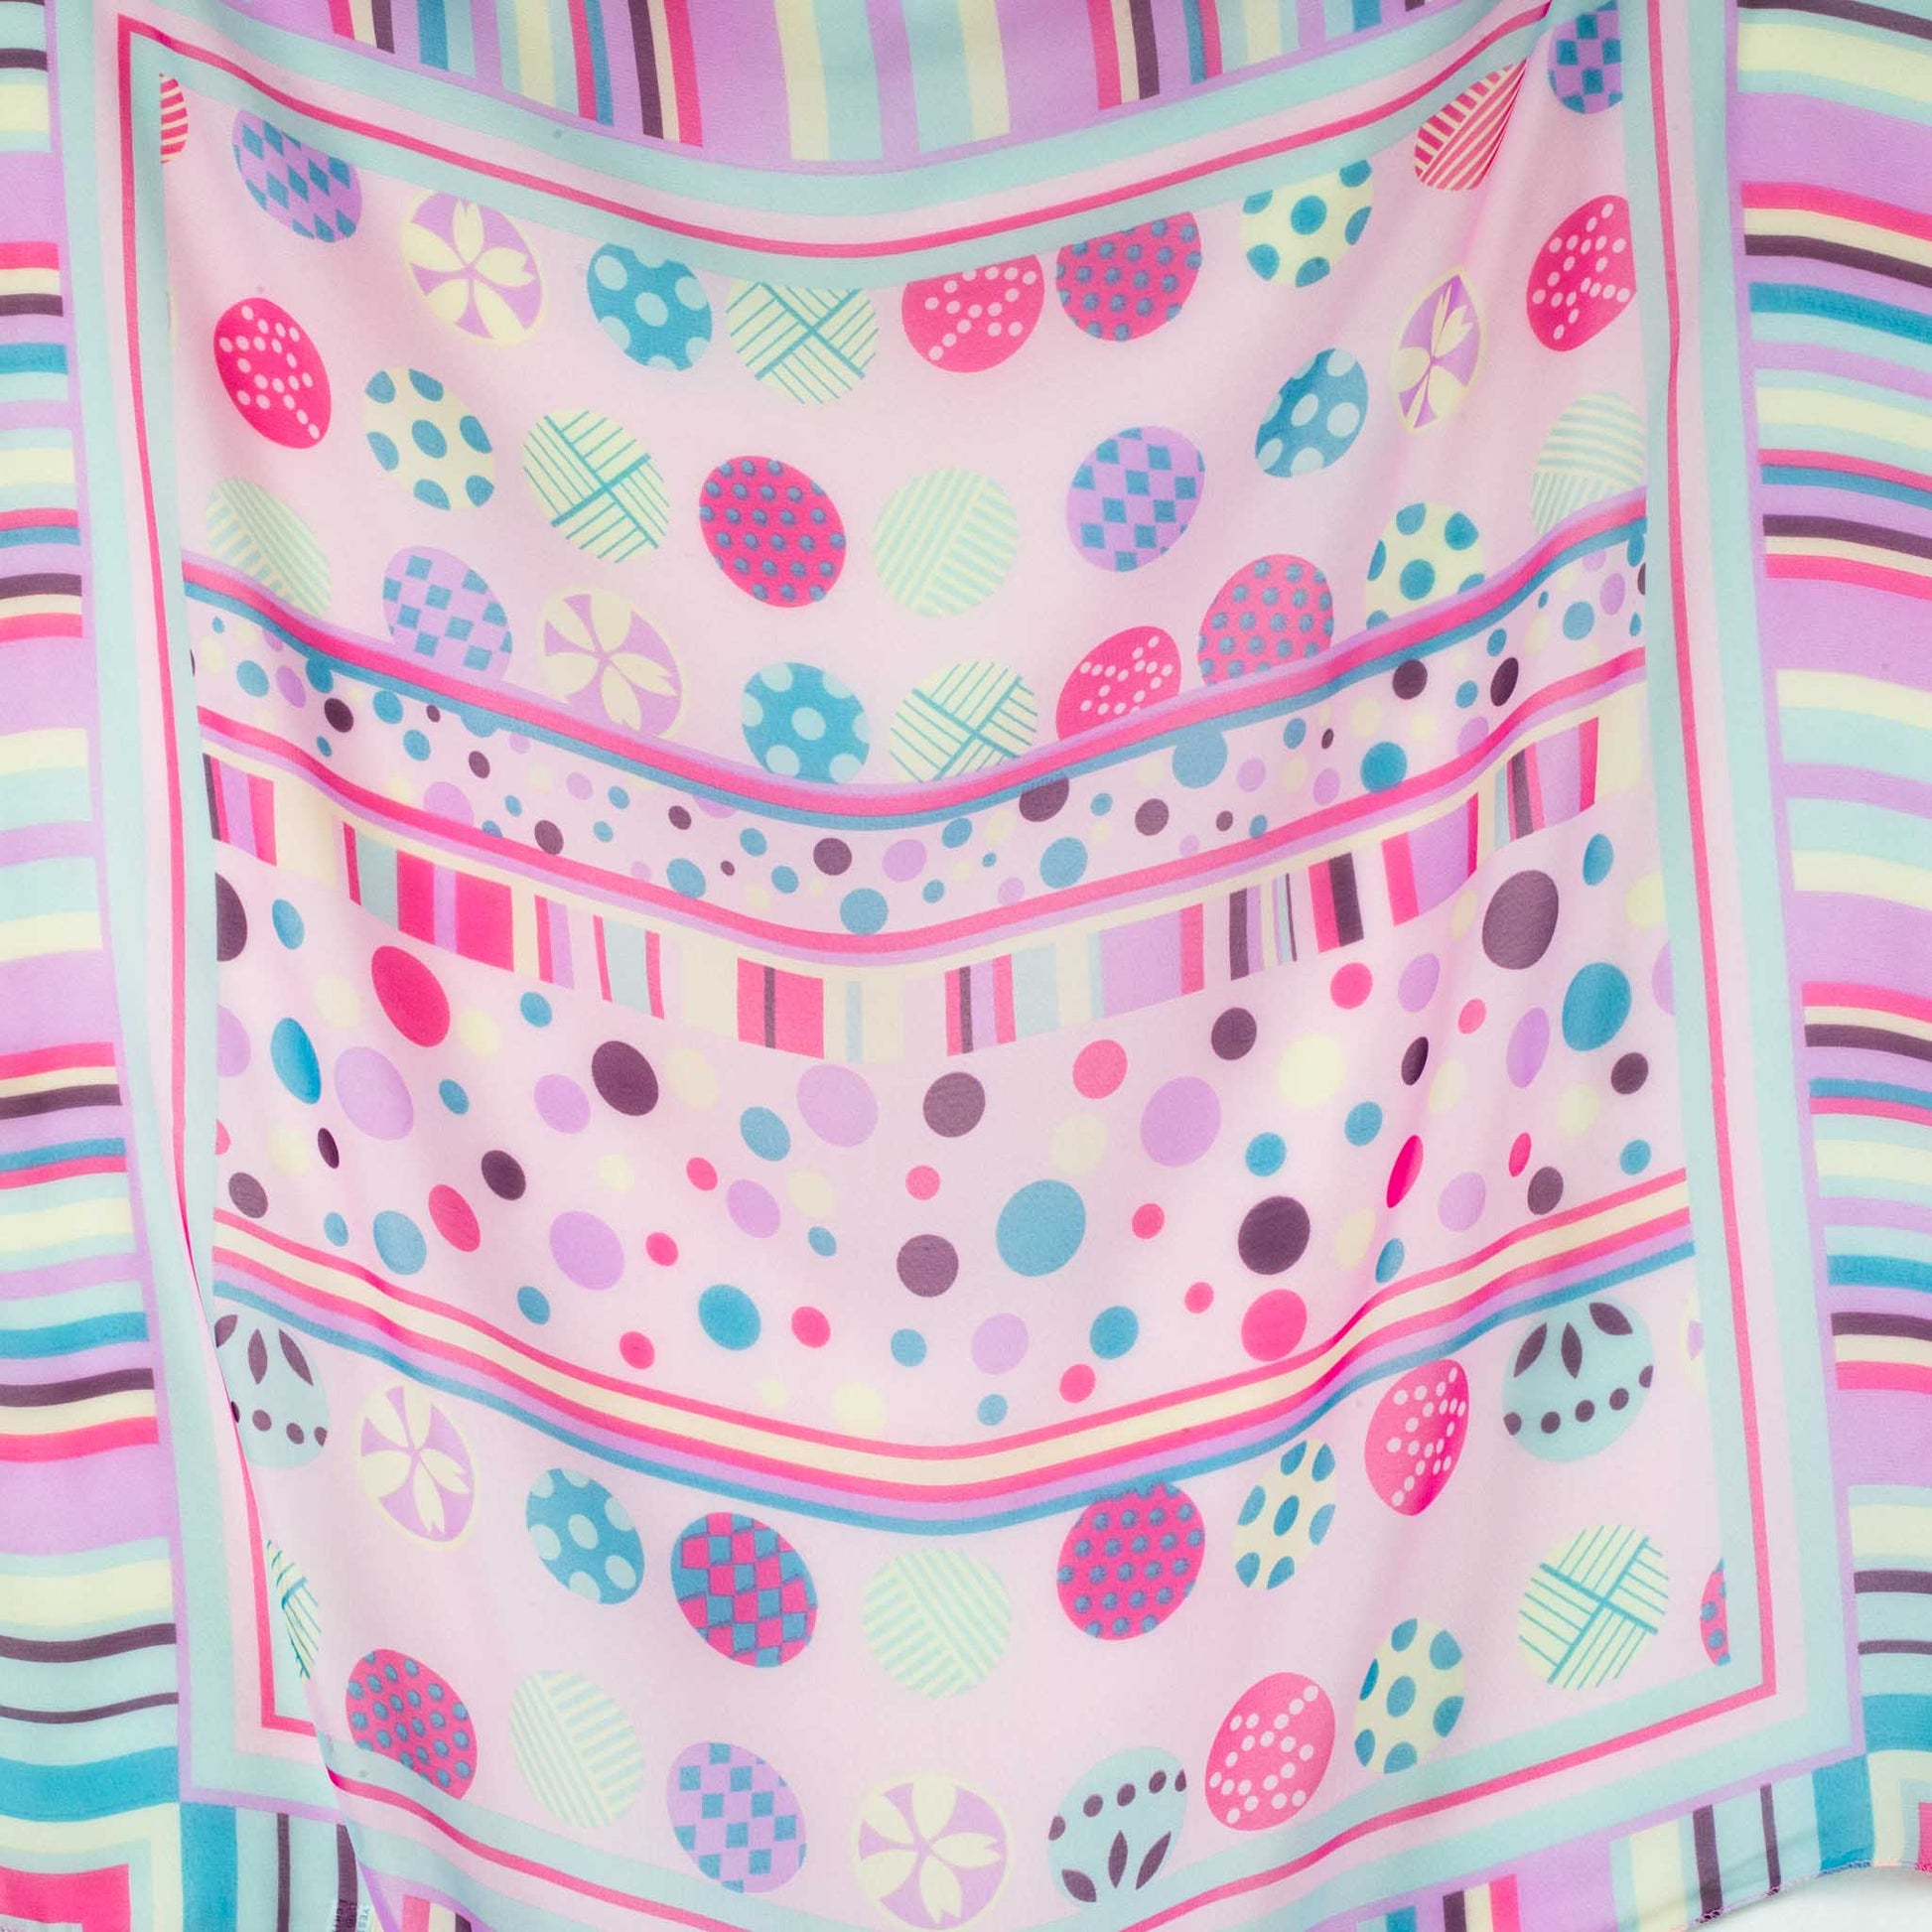 Eșarfă damă din mătase , imprimeu cu buline abstracte și dungi, 65 x 65 cm - Pink Vibes